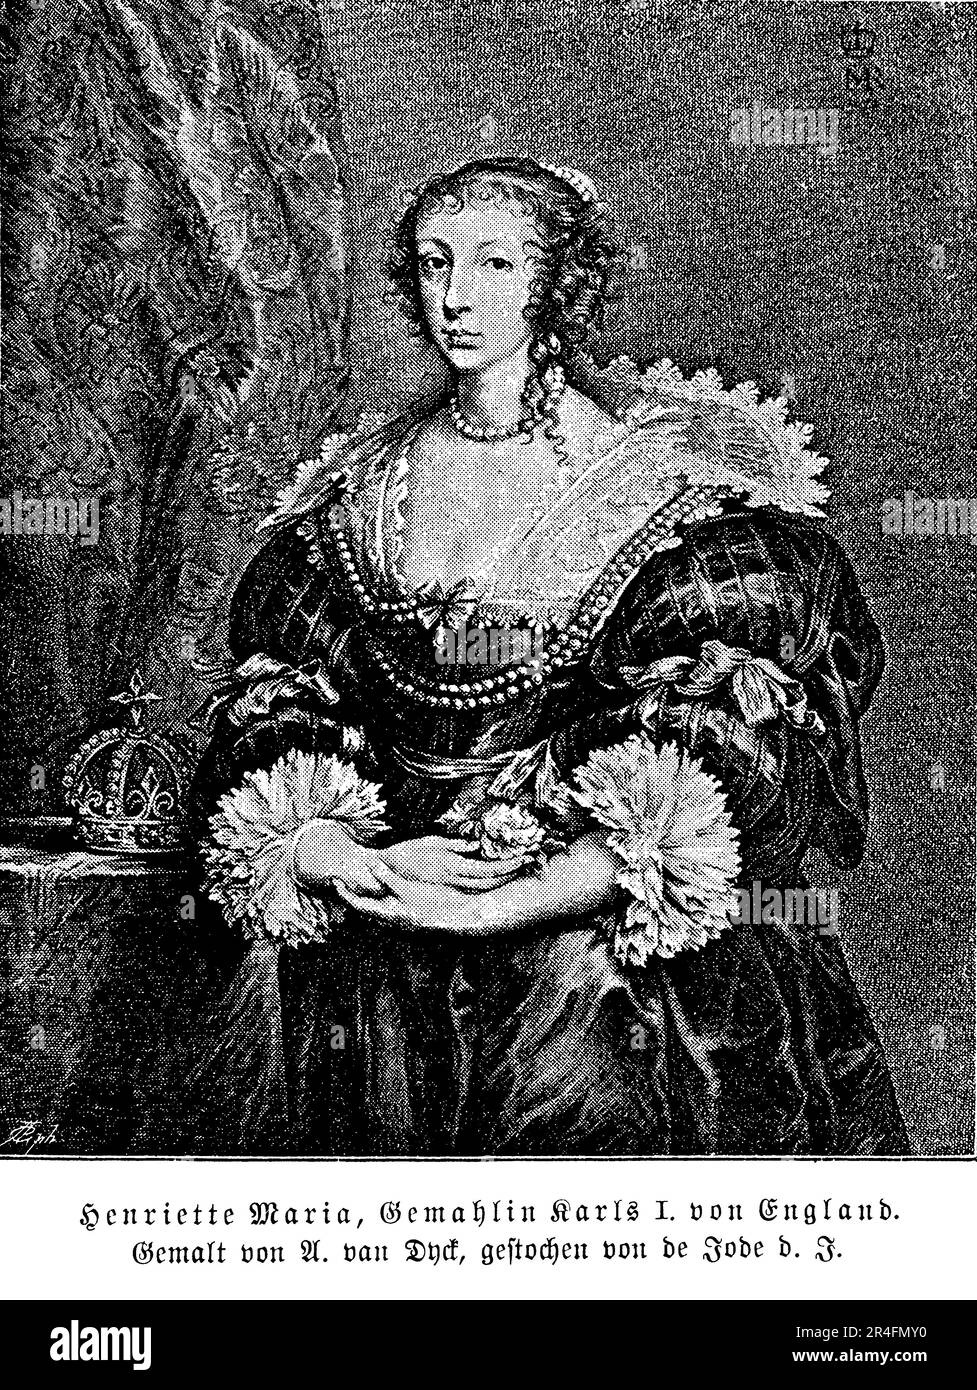 Henriette Marie war eine französische Prinzessin aus dem 17. Jahrhundert, die durch ihre Ehe mit König Karl I. zur königlichen Gemahlin Englands wurde Sie war eine gläubige Katholikin und sah sich erheblichen Widerständen der protestantischen Mehrheit in England gegenüber. Sie war an einer Reihe politischer Intrigen beteiligt und spielte eine Schlüsselrolle bei der Sicherstellung der französischen Unterstützung für die Sache der Royalisten während des Englischen Bürgerkriegs. Nach der Hinrichtung des Königs ging sie ins Exil nach Frankreich und unterstützte die Sache der Royalisten bis zu ihrem Tod Stockfoto